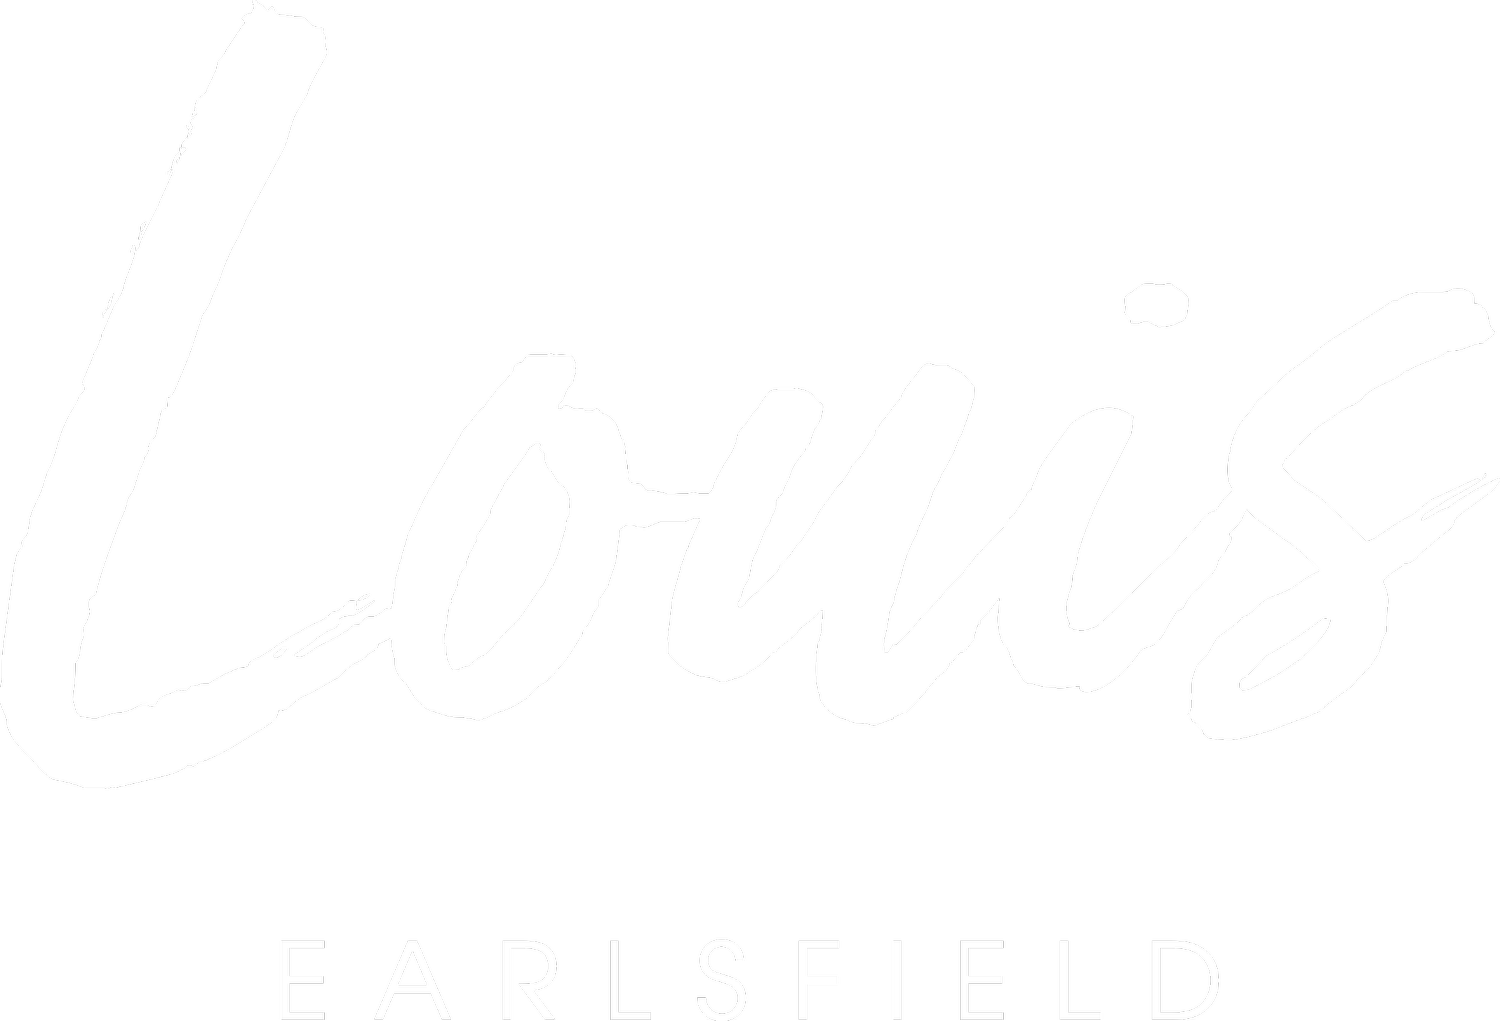 Louis Earlsfield - is a mediterranean restaurant located in Earlsfield, London. SW18 4HA. Now open in Sunday Mills, 21 Trewint Street